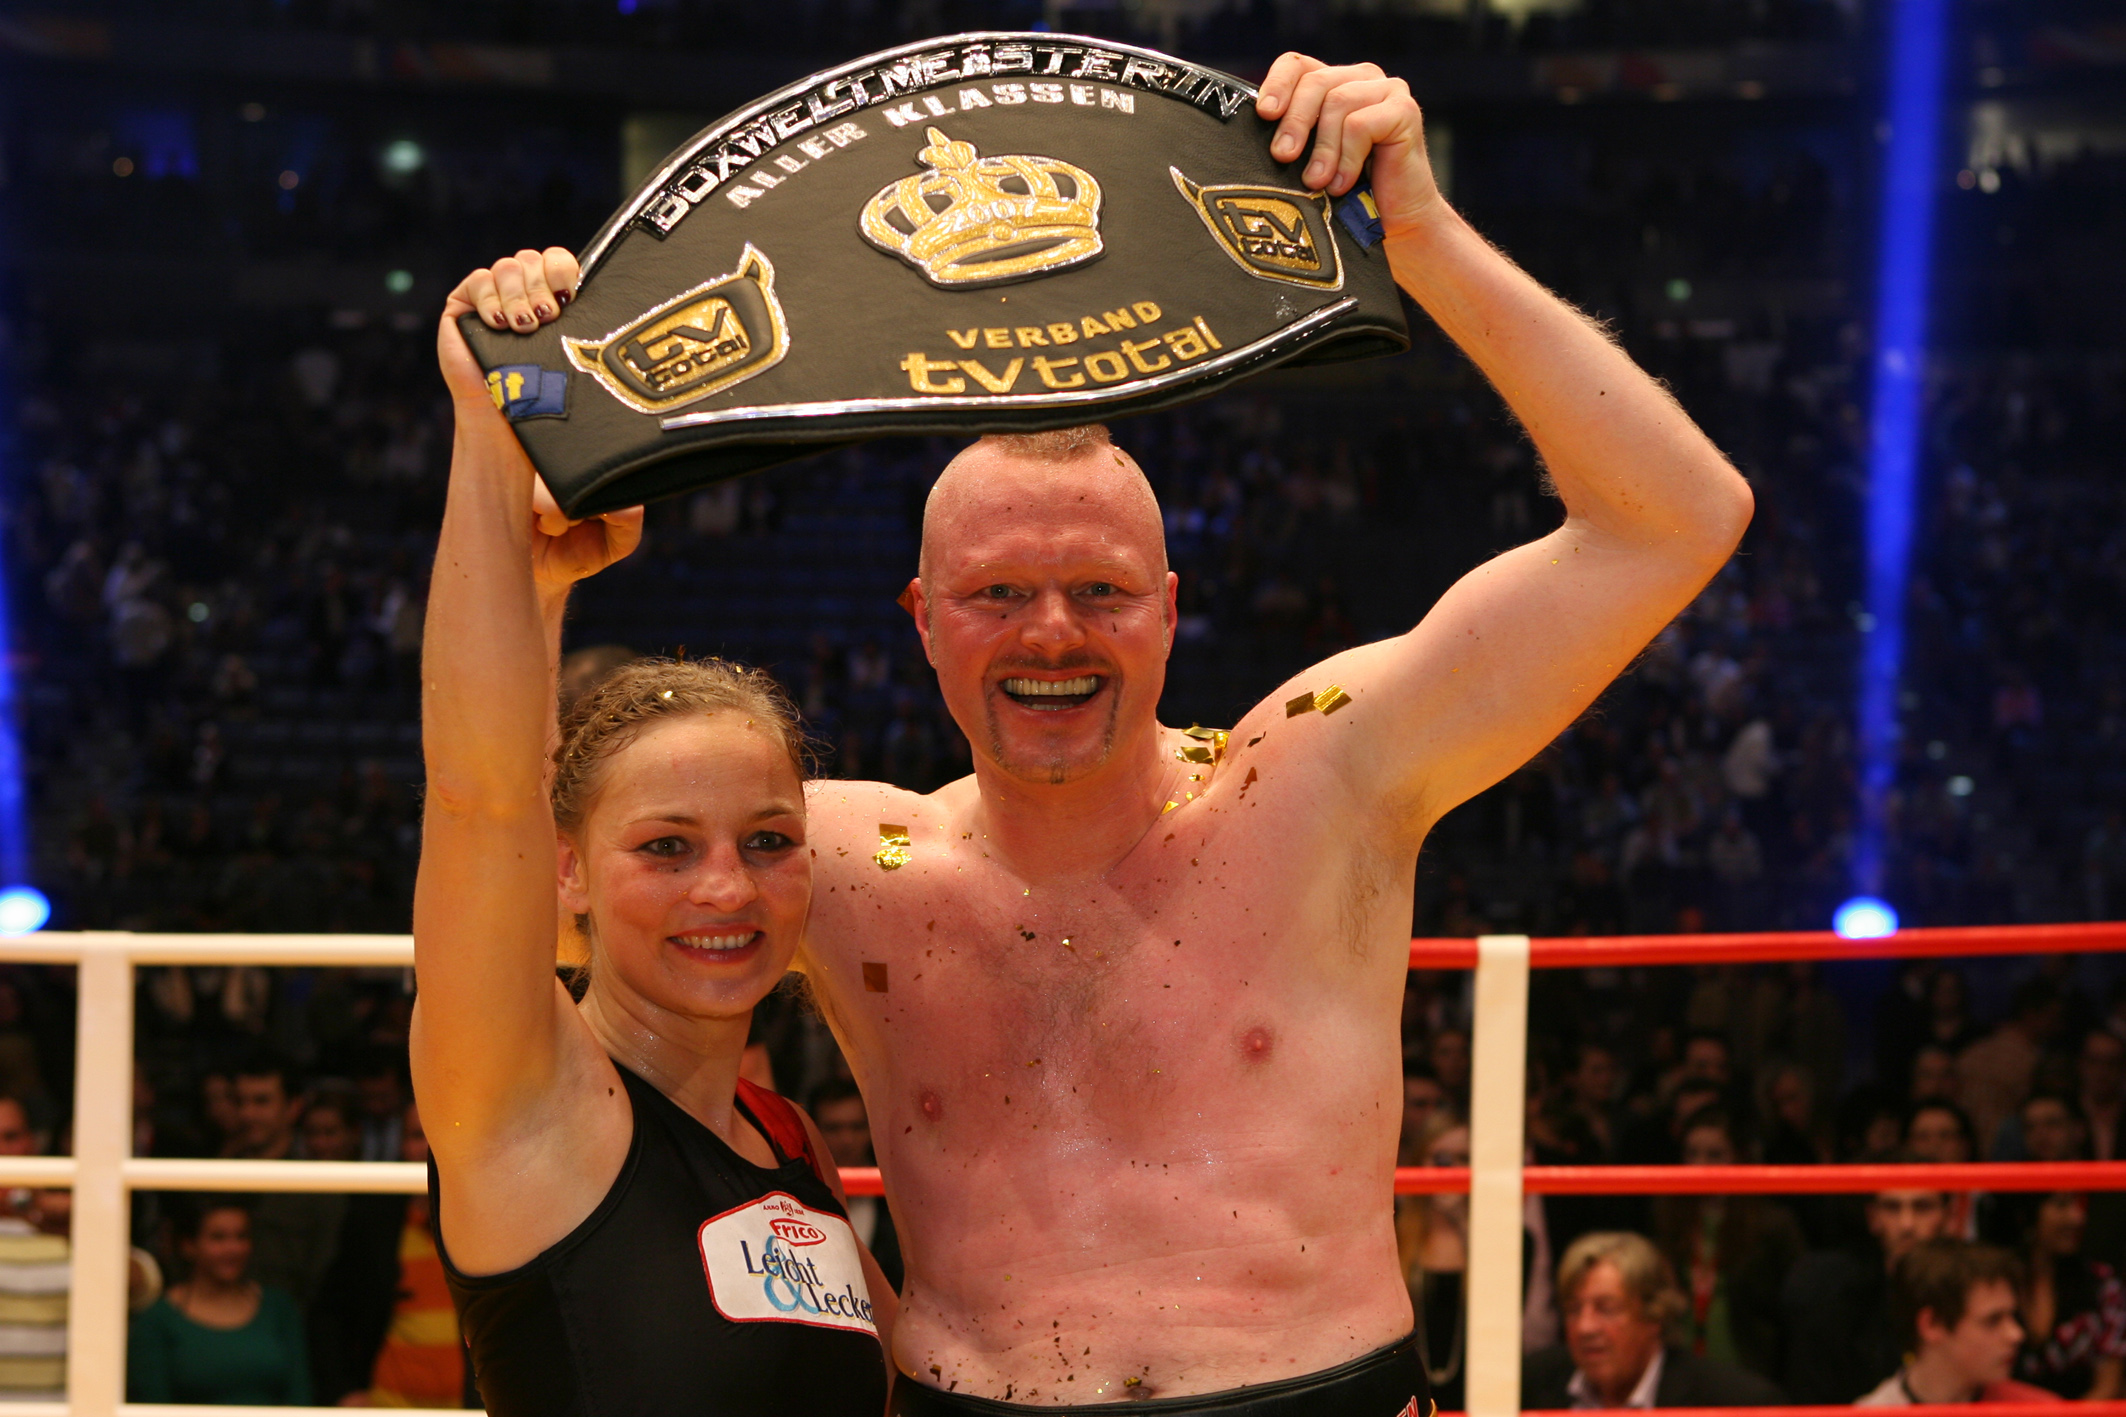 Regina Halmich (l.) und Stefan Raab (r.) nach ihrem Boxkampf im Jahr 2007